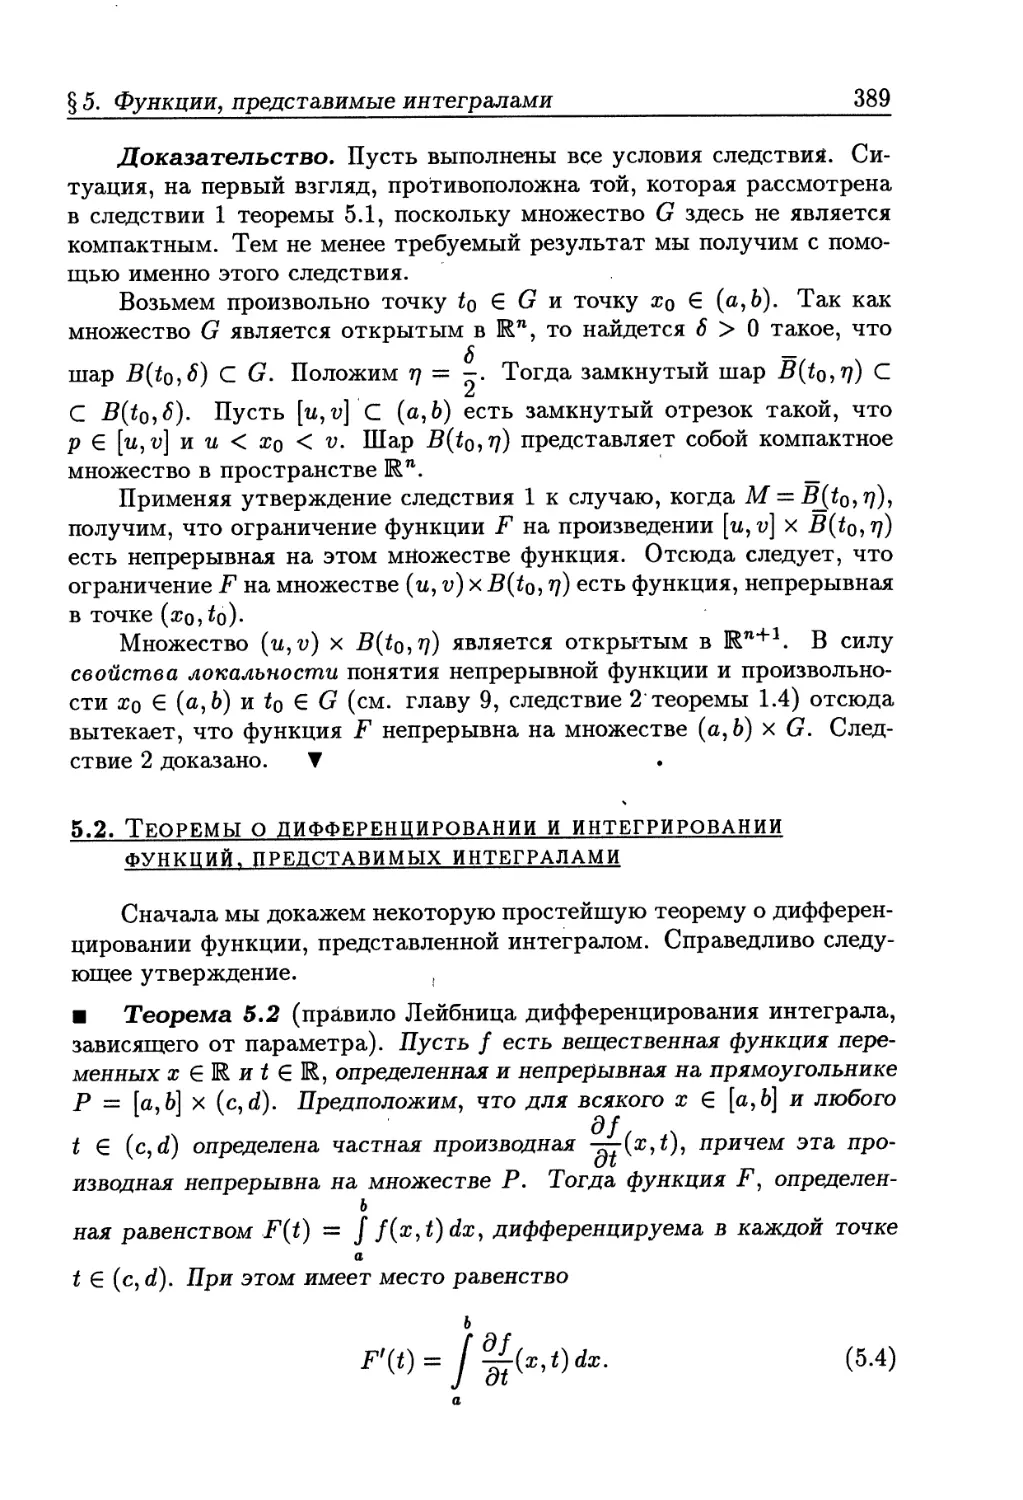 5.2. Теоремы о дифференцировании и интегрировании функций, представимых интегралами